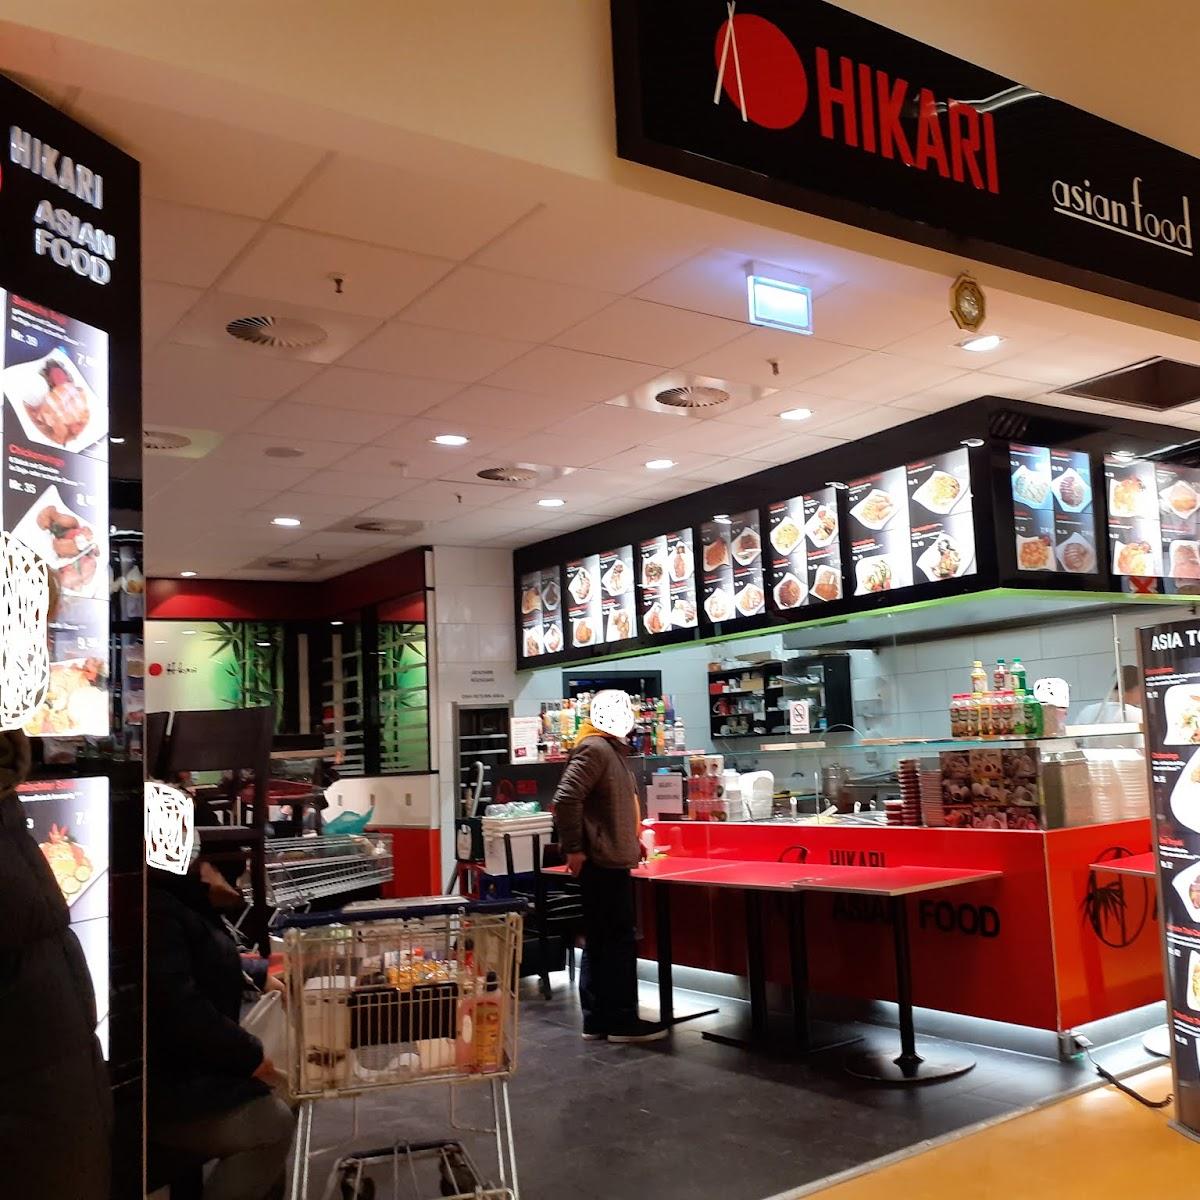 Restaurant "Hikari Asian Food" in Kaiserslautern